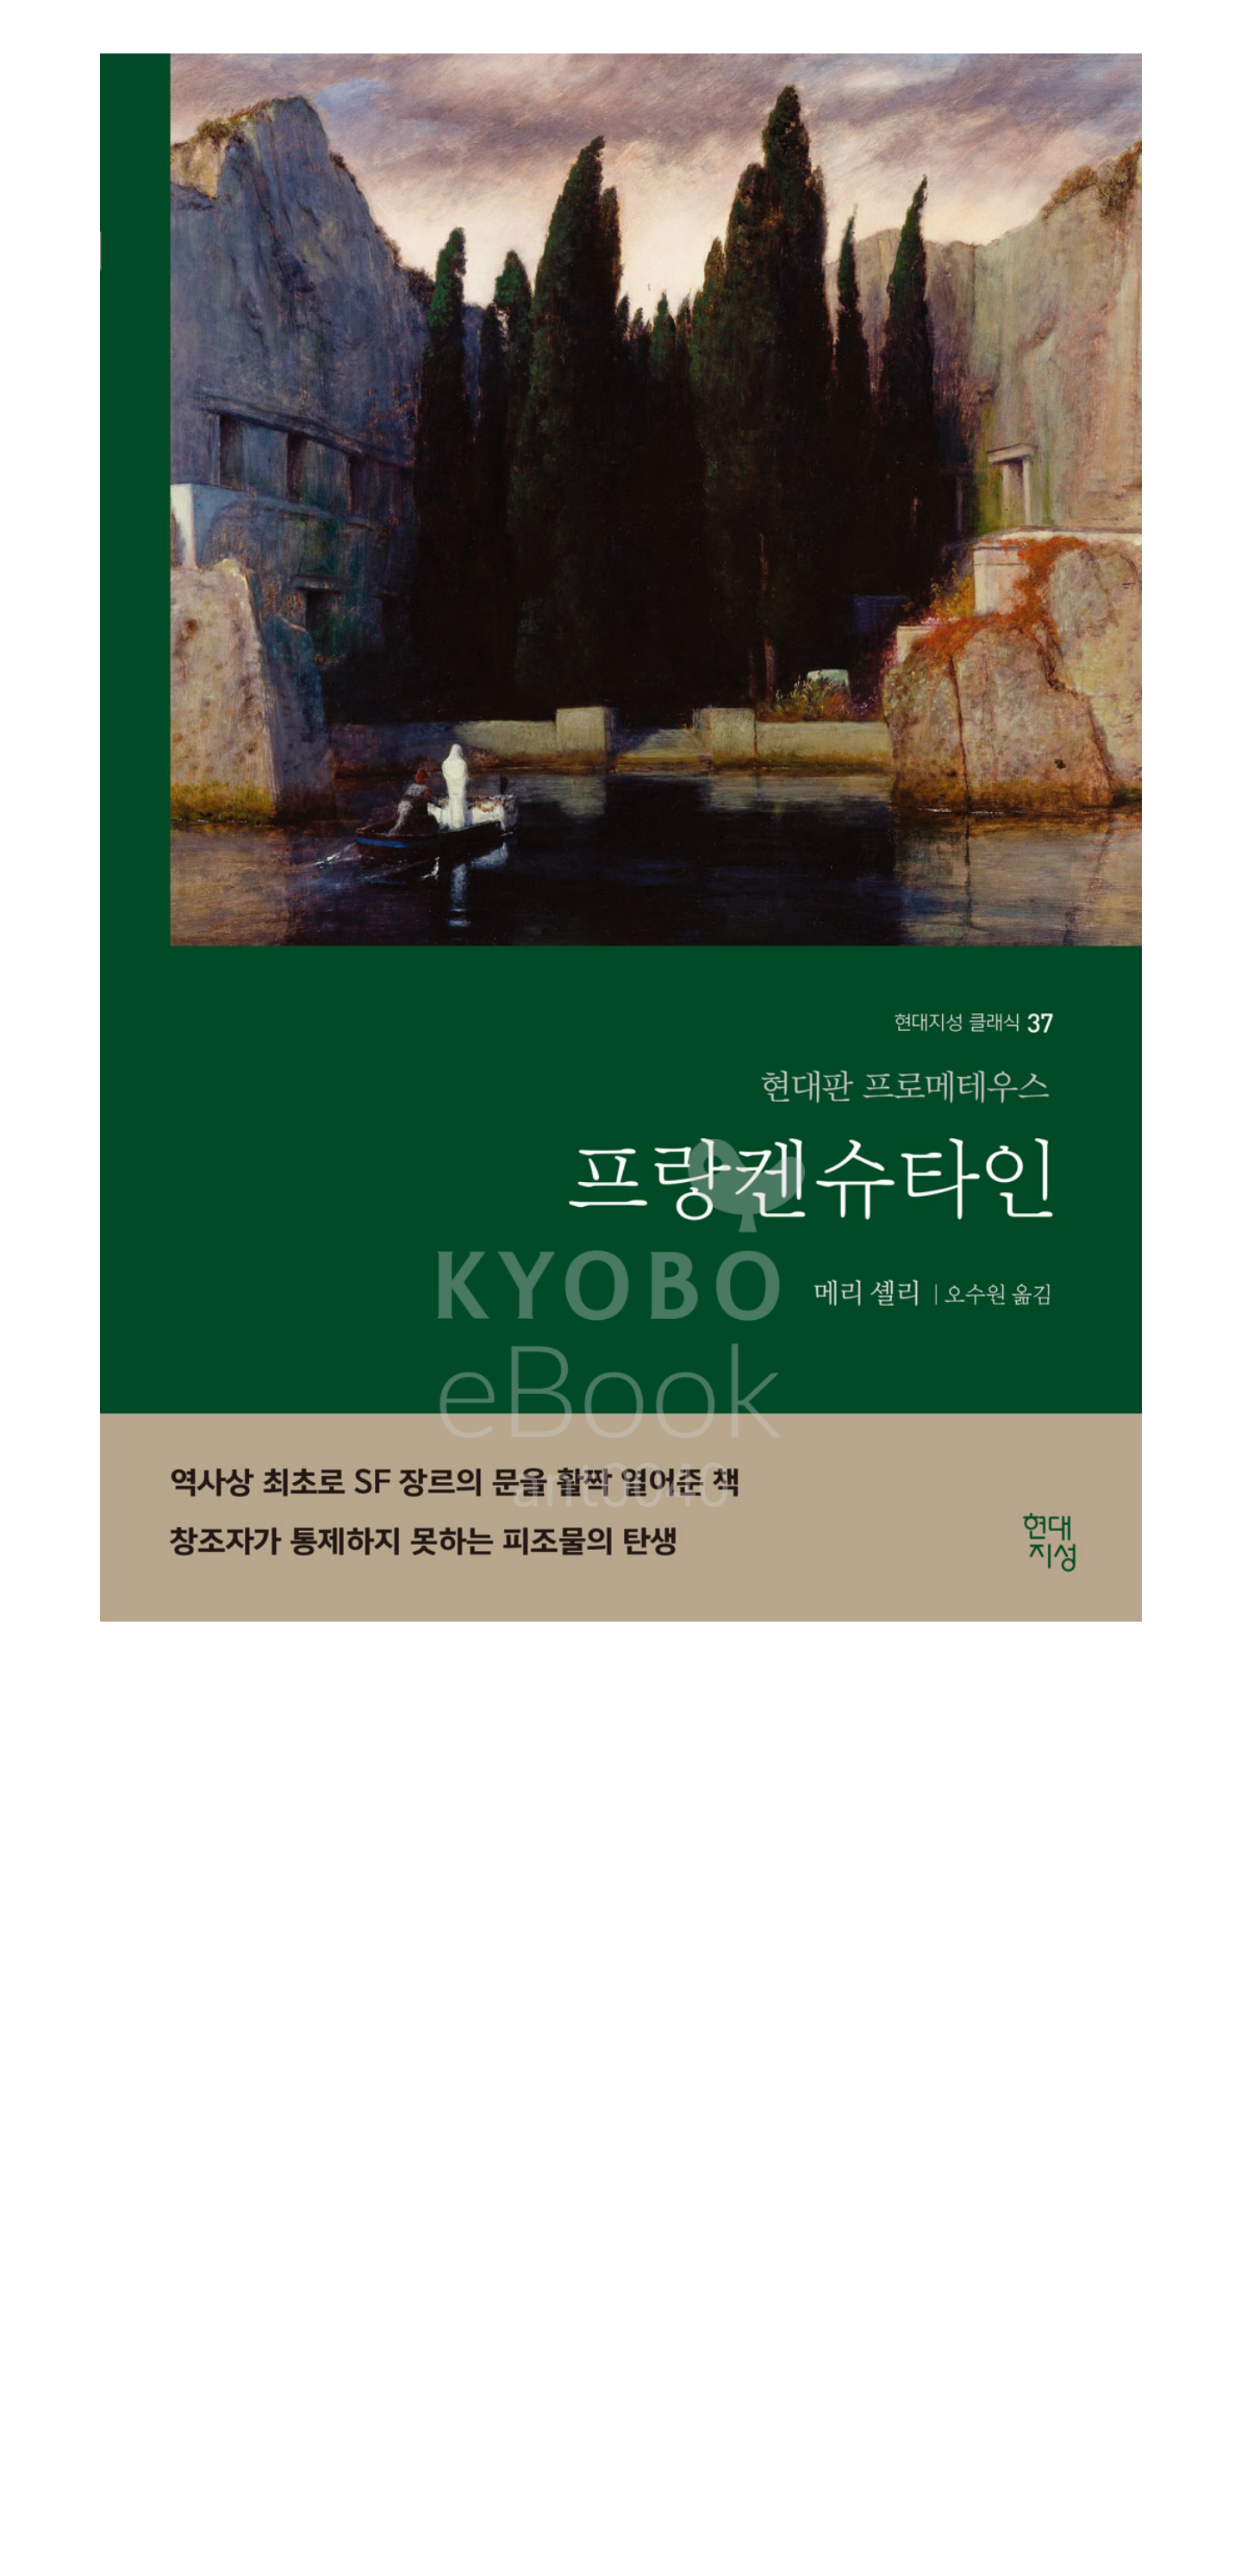 kyoboebook_20220728-193050.png